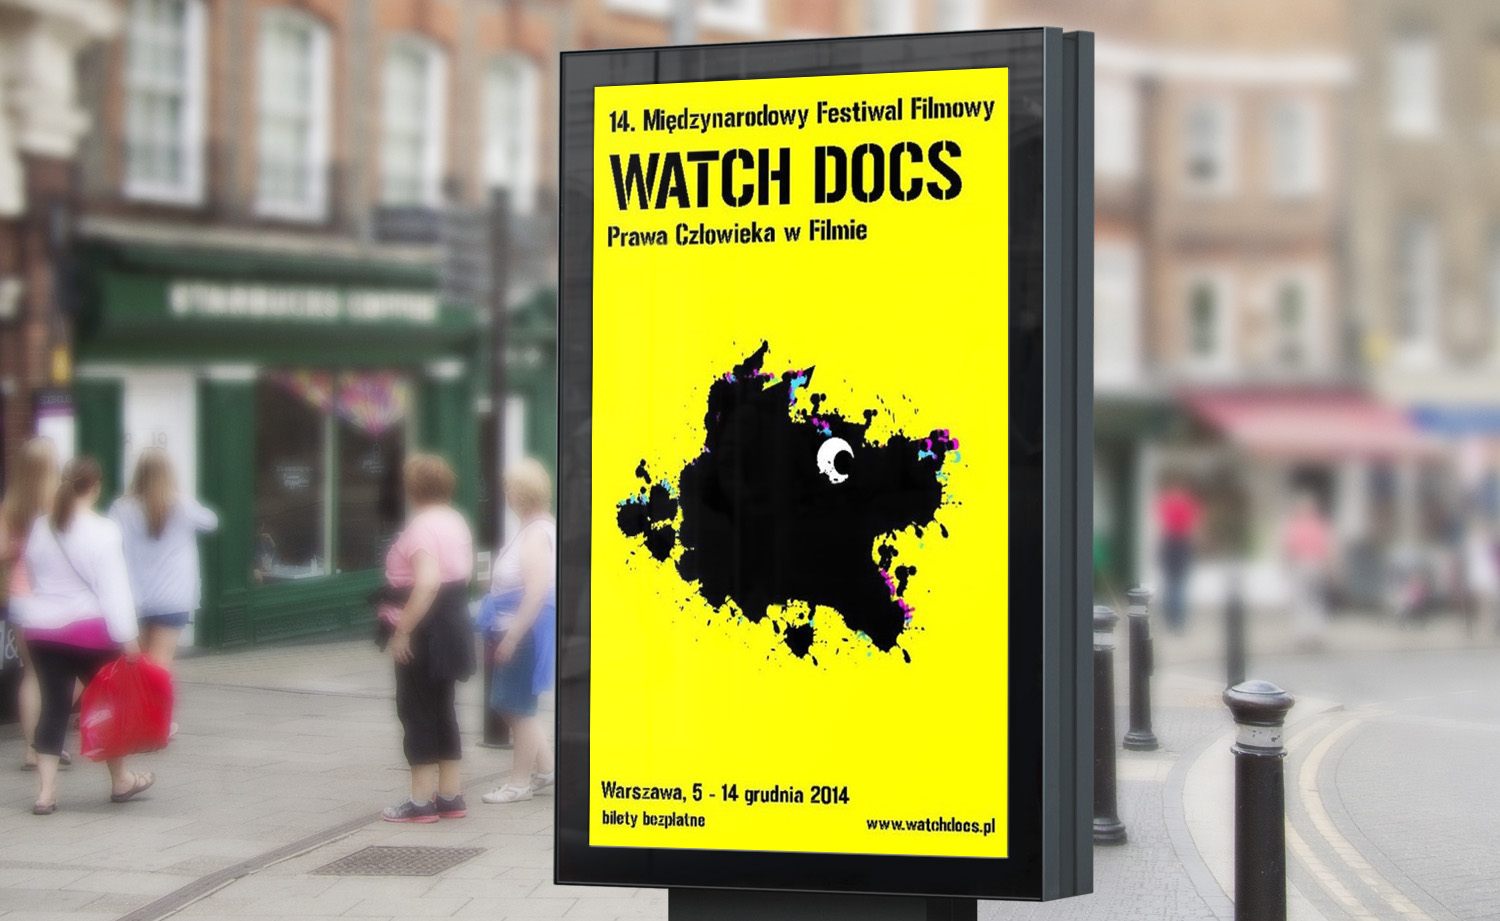 Biuro Podróży Reklamy is a partner of WATCH DOCS Festival